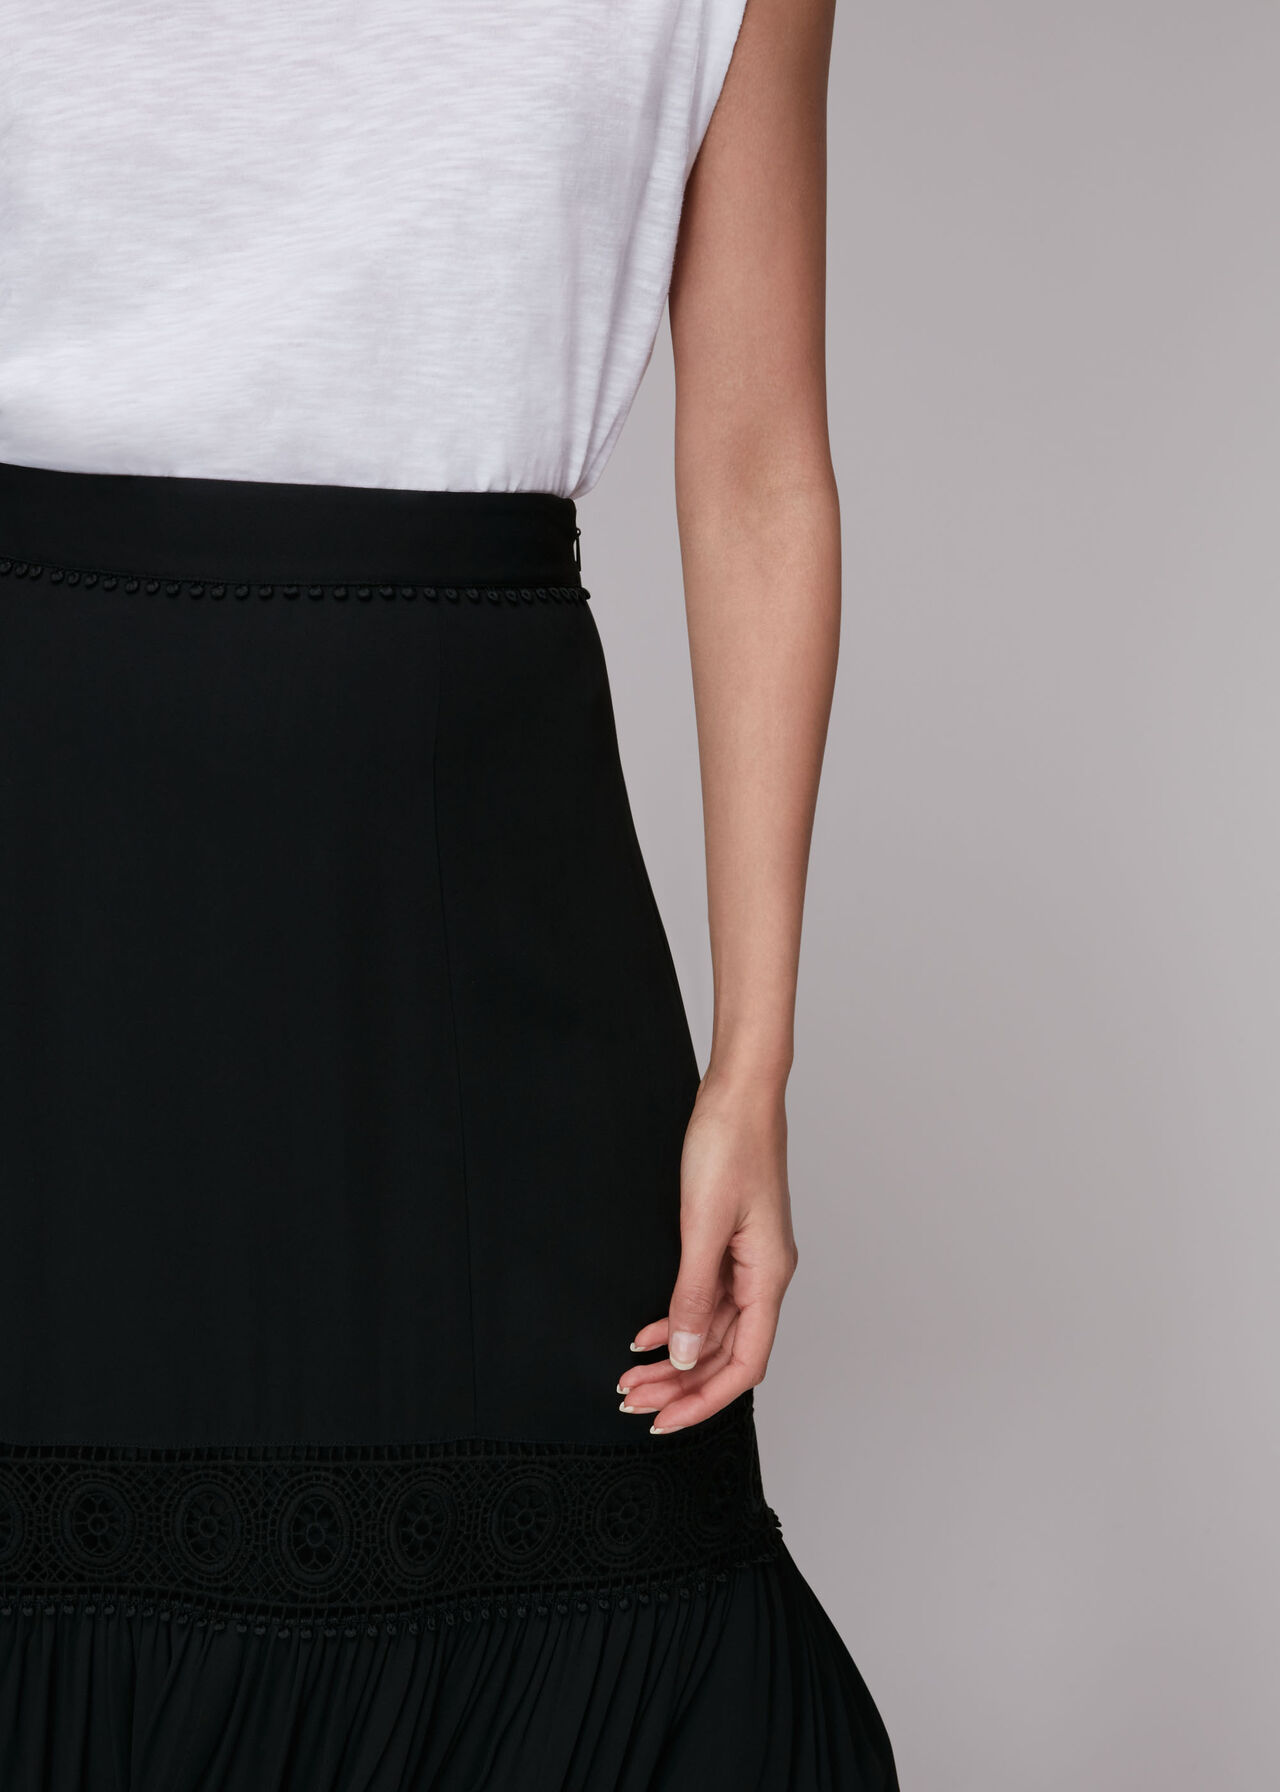 Ada Crochet Detail Skirt Black